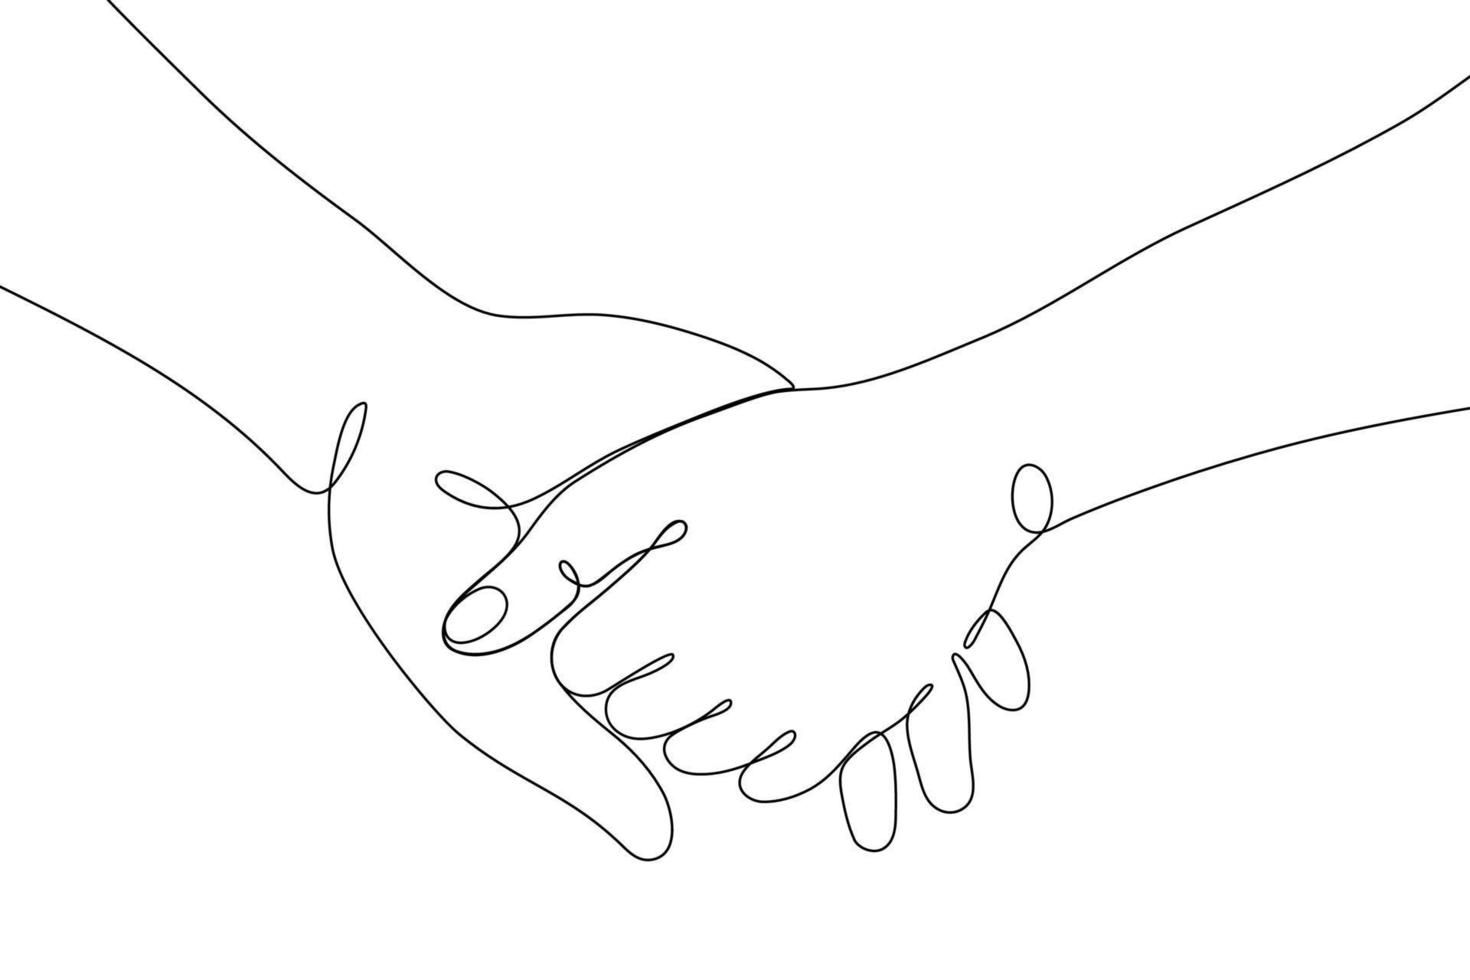 singolo linea disegnato mano gesti, minimalista umano mani mostrando amore, romantico, relazione cartello. dinamico continuo uno linea grafico vettore design